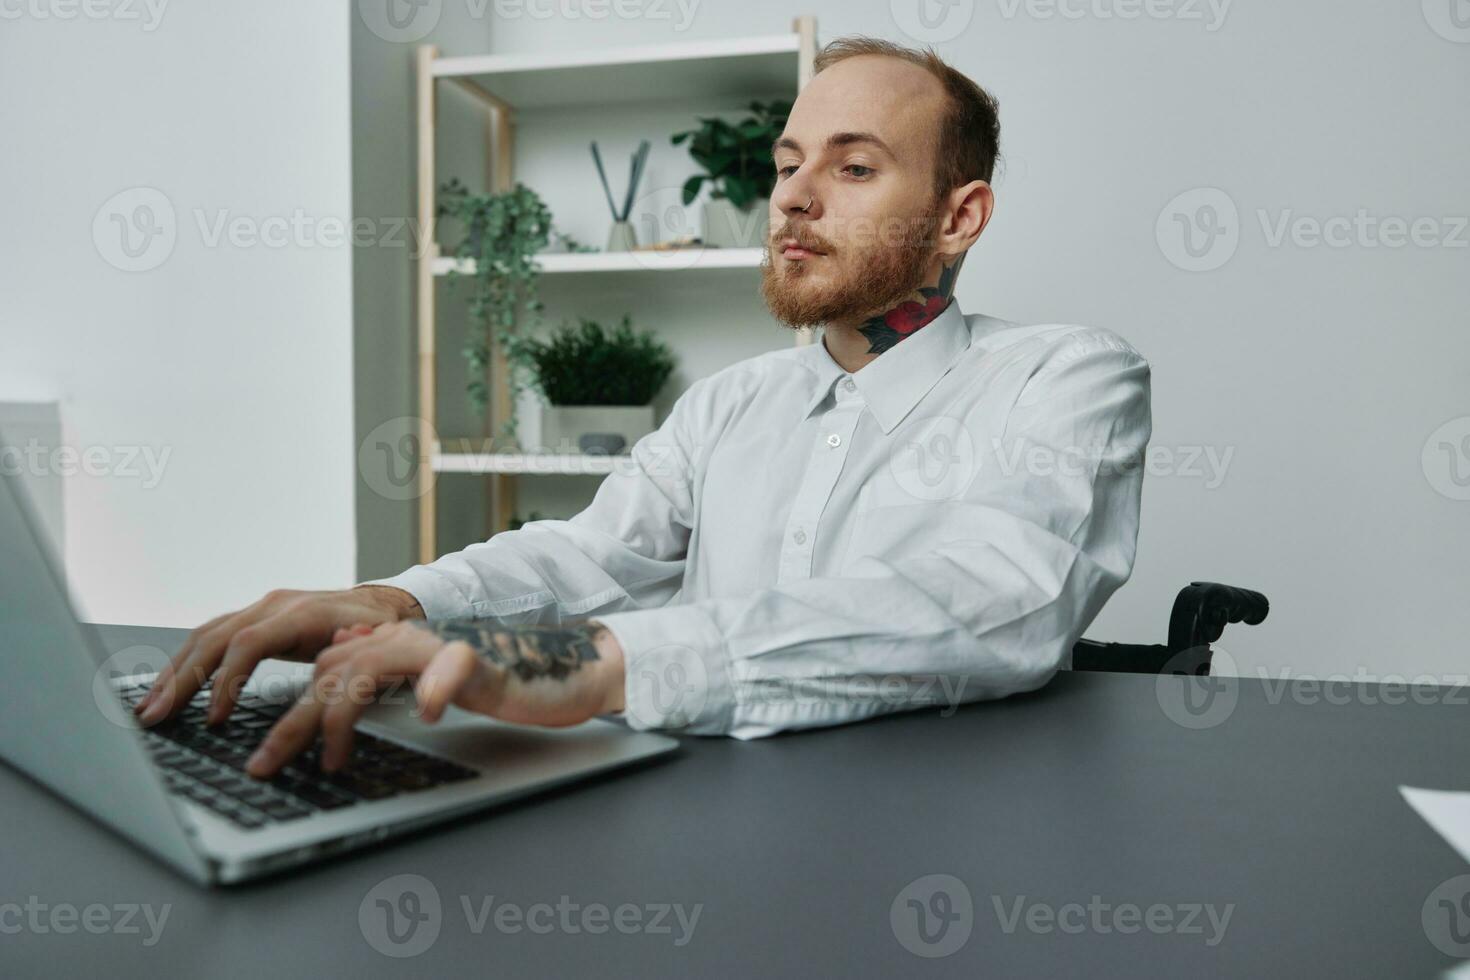 een Mens in een rolstoel een zakenman met tatoeages in de kantoor werken Bij een laptop, integratie in samenleving, de concept van werken een persoon met handicap, vrijheid van sociaal kaders foto